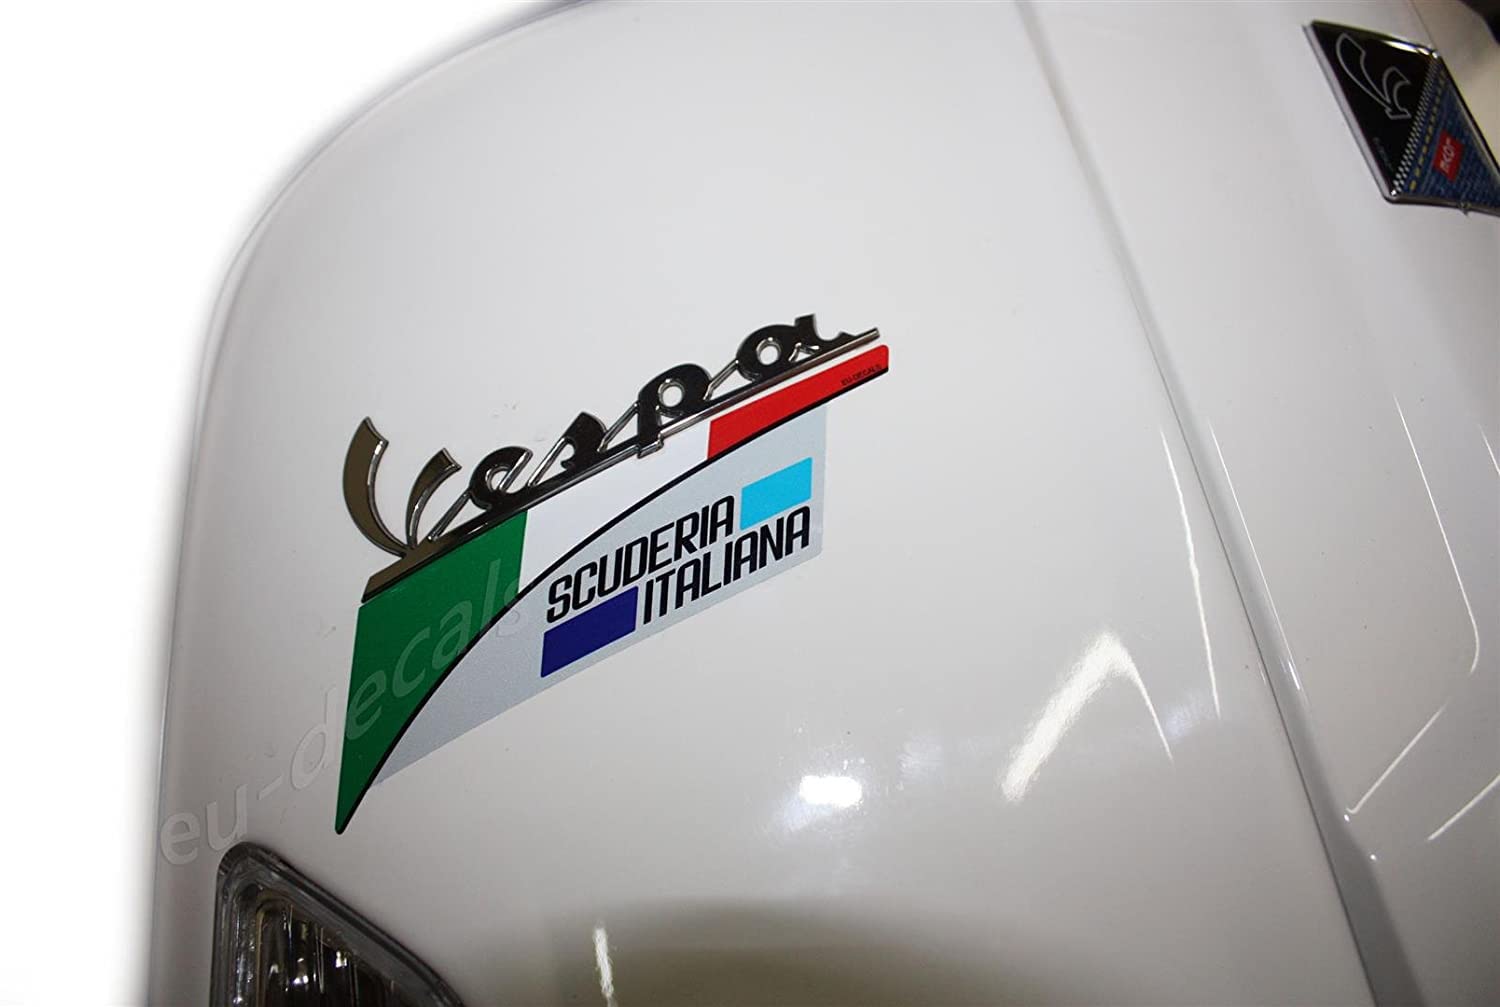 Vespa-Logo-Abzeichen Erweiterung italienische Flagge Scuderia Italiana Aufkleber GTS GTV LX S Aufkleber laminiert Bild auf Vespa von EU-Decals - MioVespa Collection